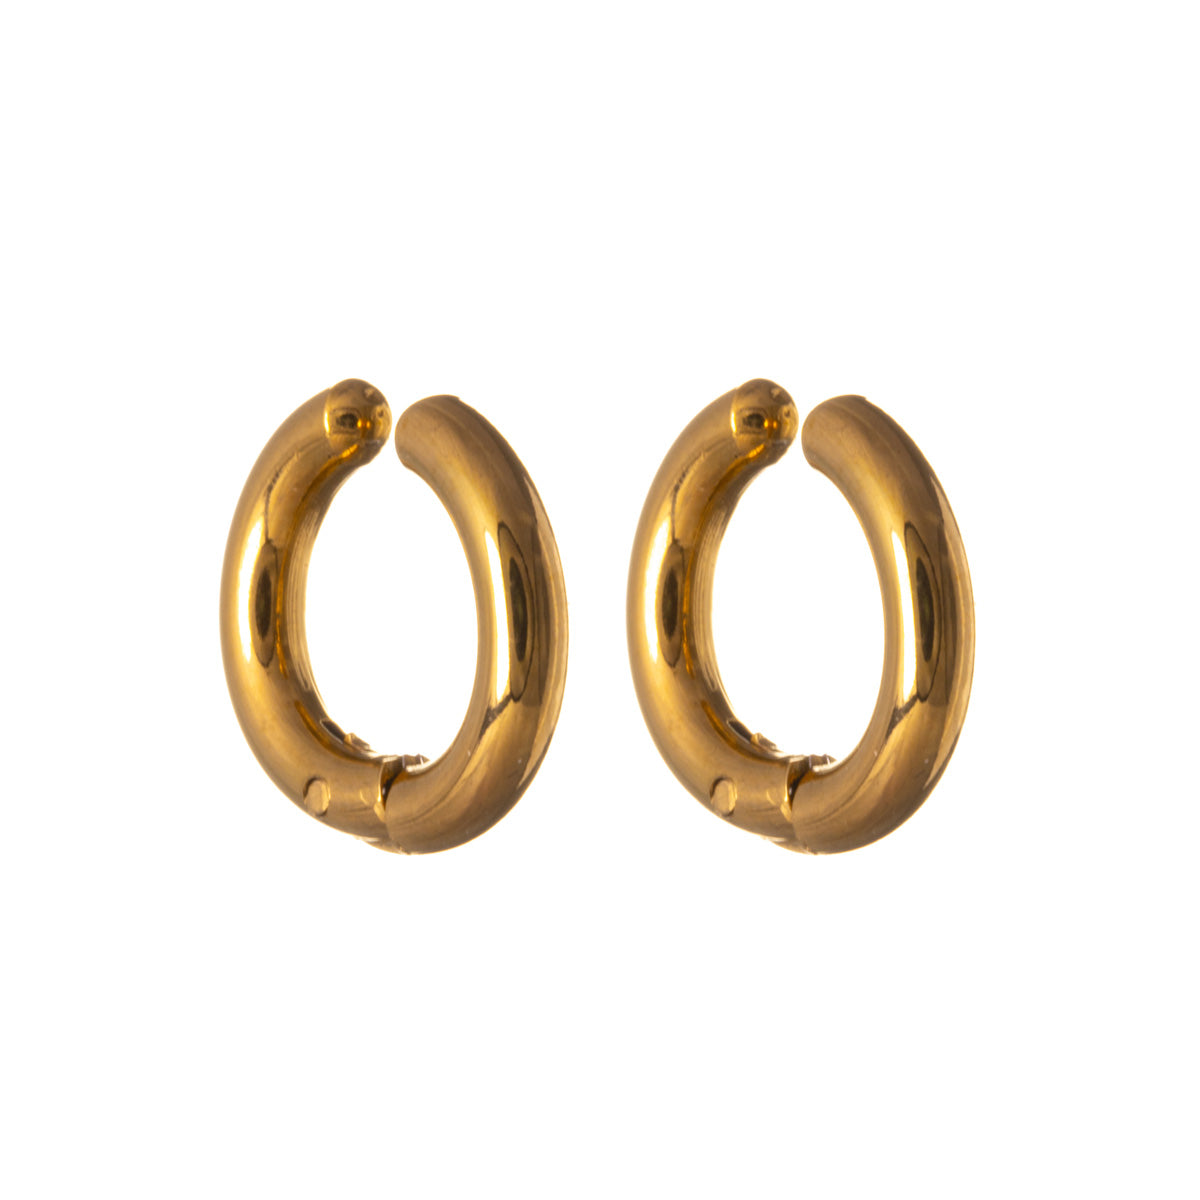 Earrings clip earrings 2.5mm x 8mm (Steel 316L)